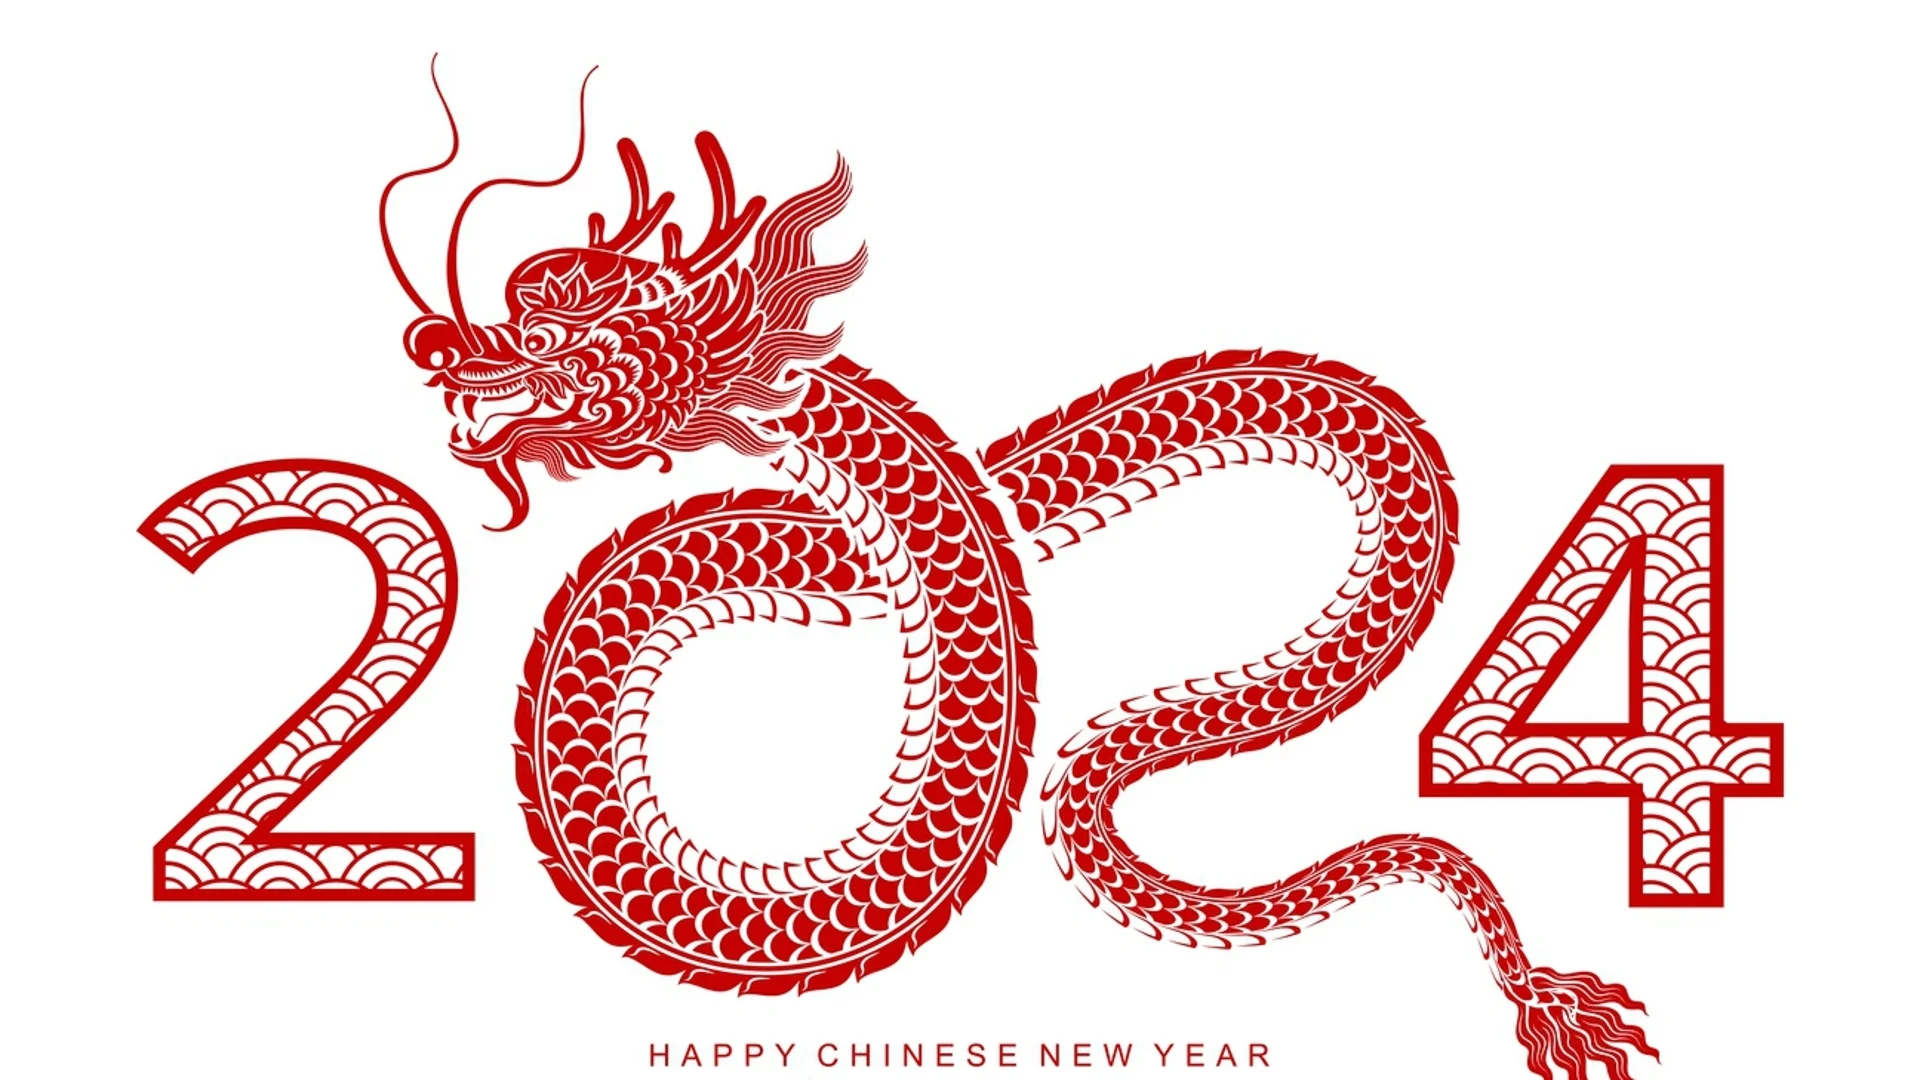 8 начина да успокоите и примамите Дървения дракон на ваша страна по време на китайската Нова година